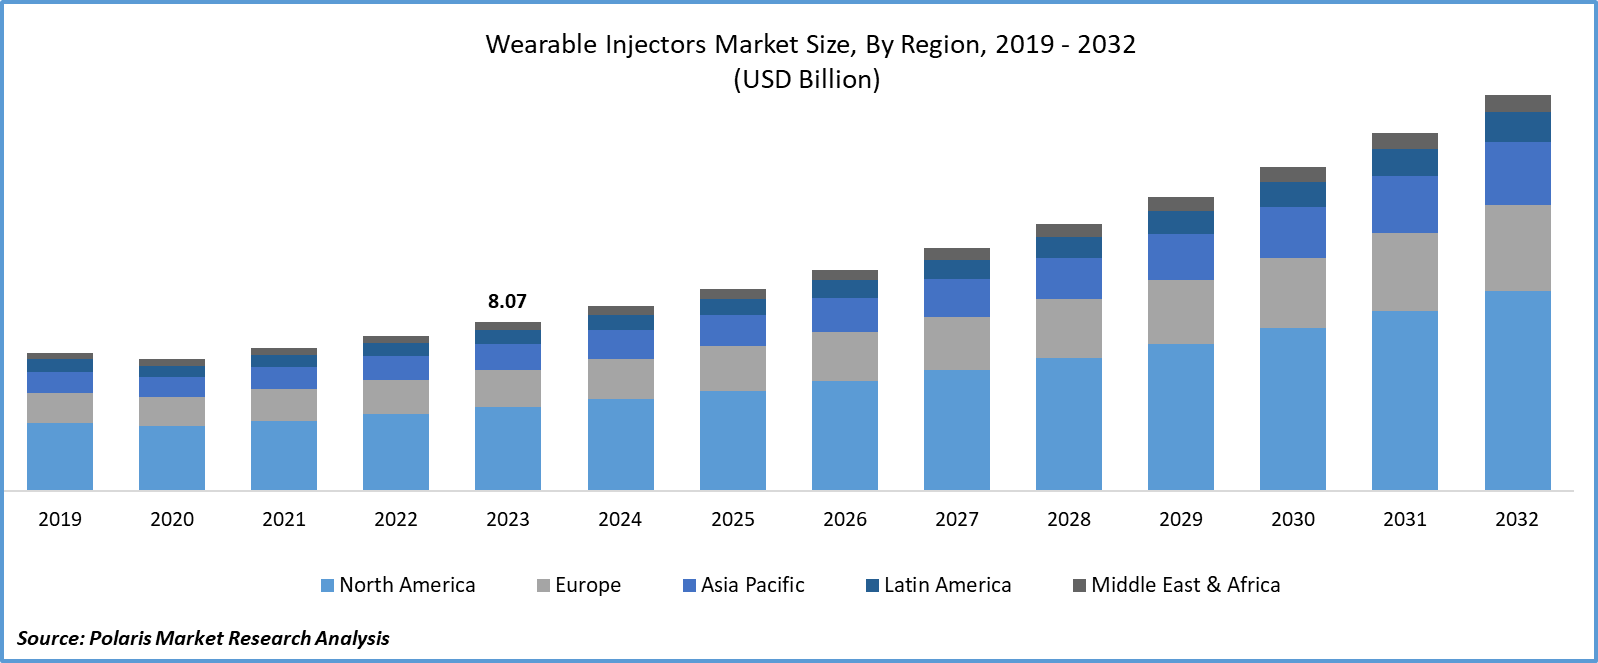 Wearable Injectors Market Size